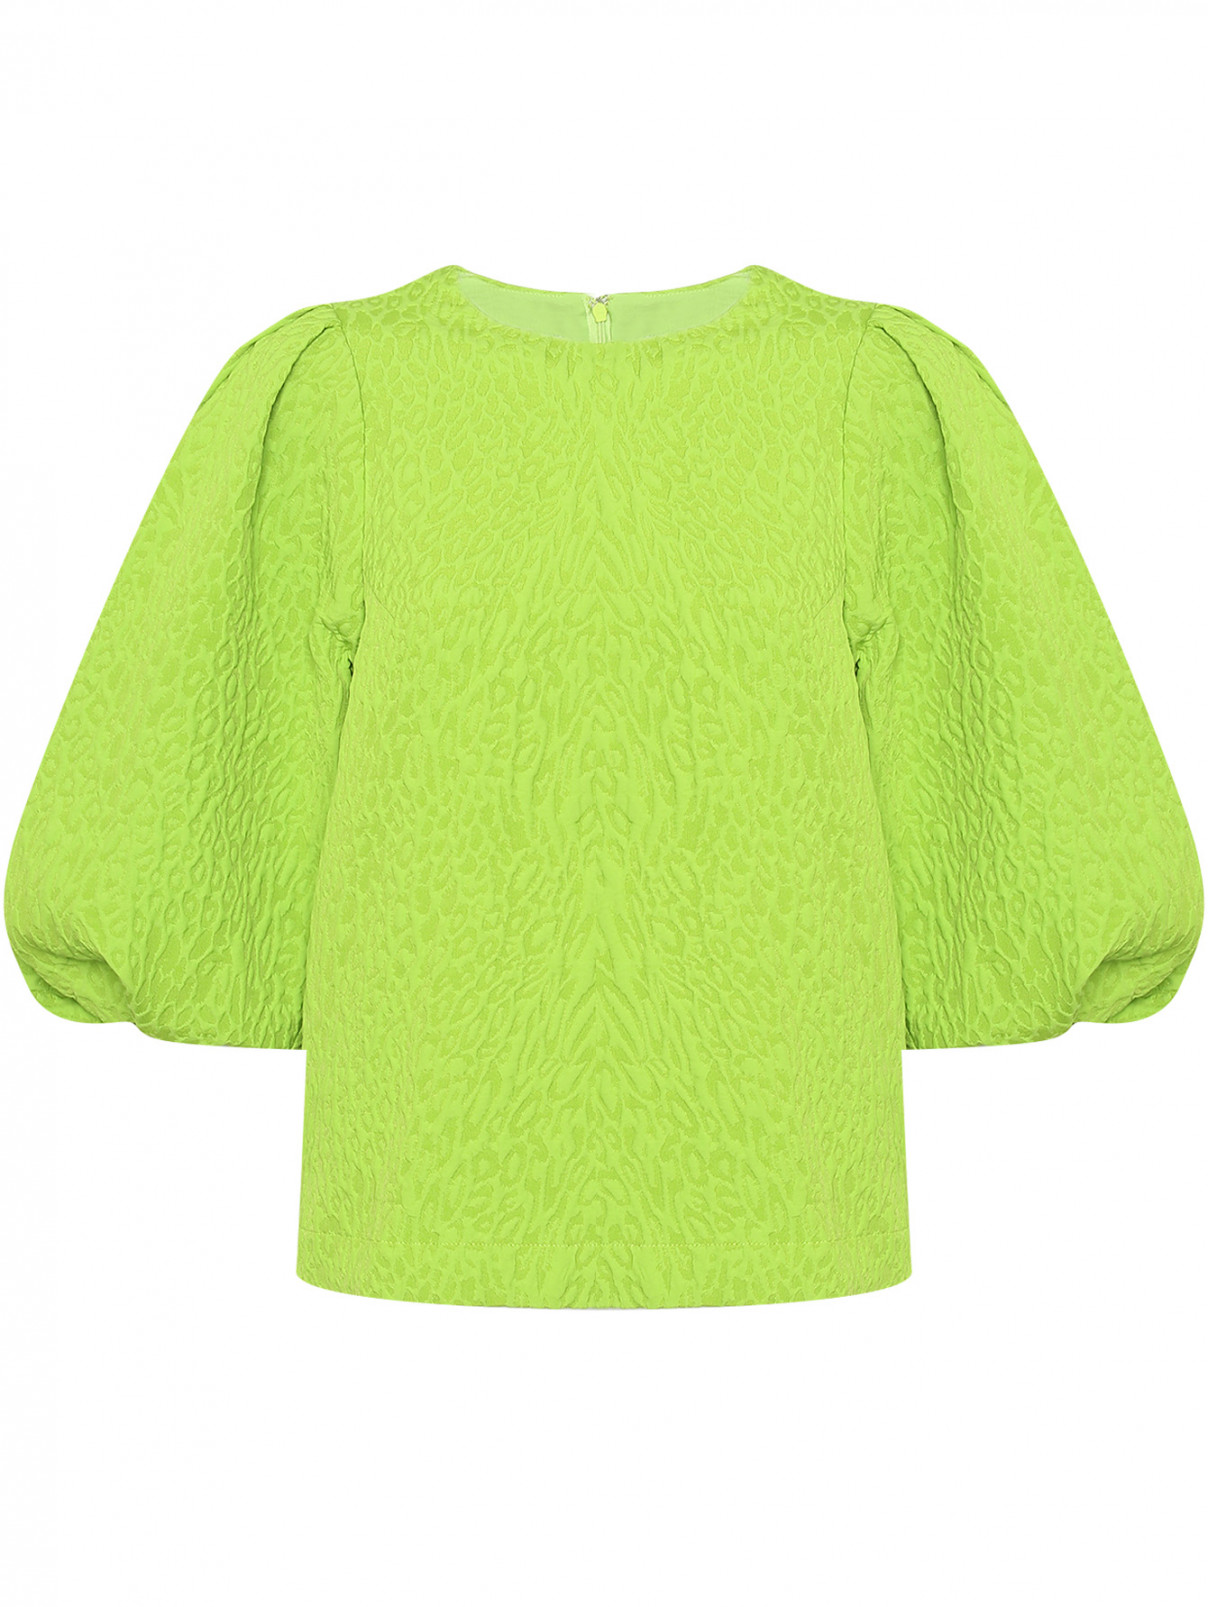 Блуза с объемными рукавами Essentiel Antwerp  –  Общий вид  – Цвет:  Зеленый